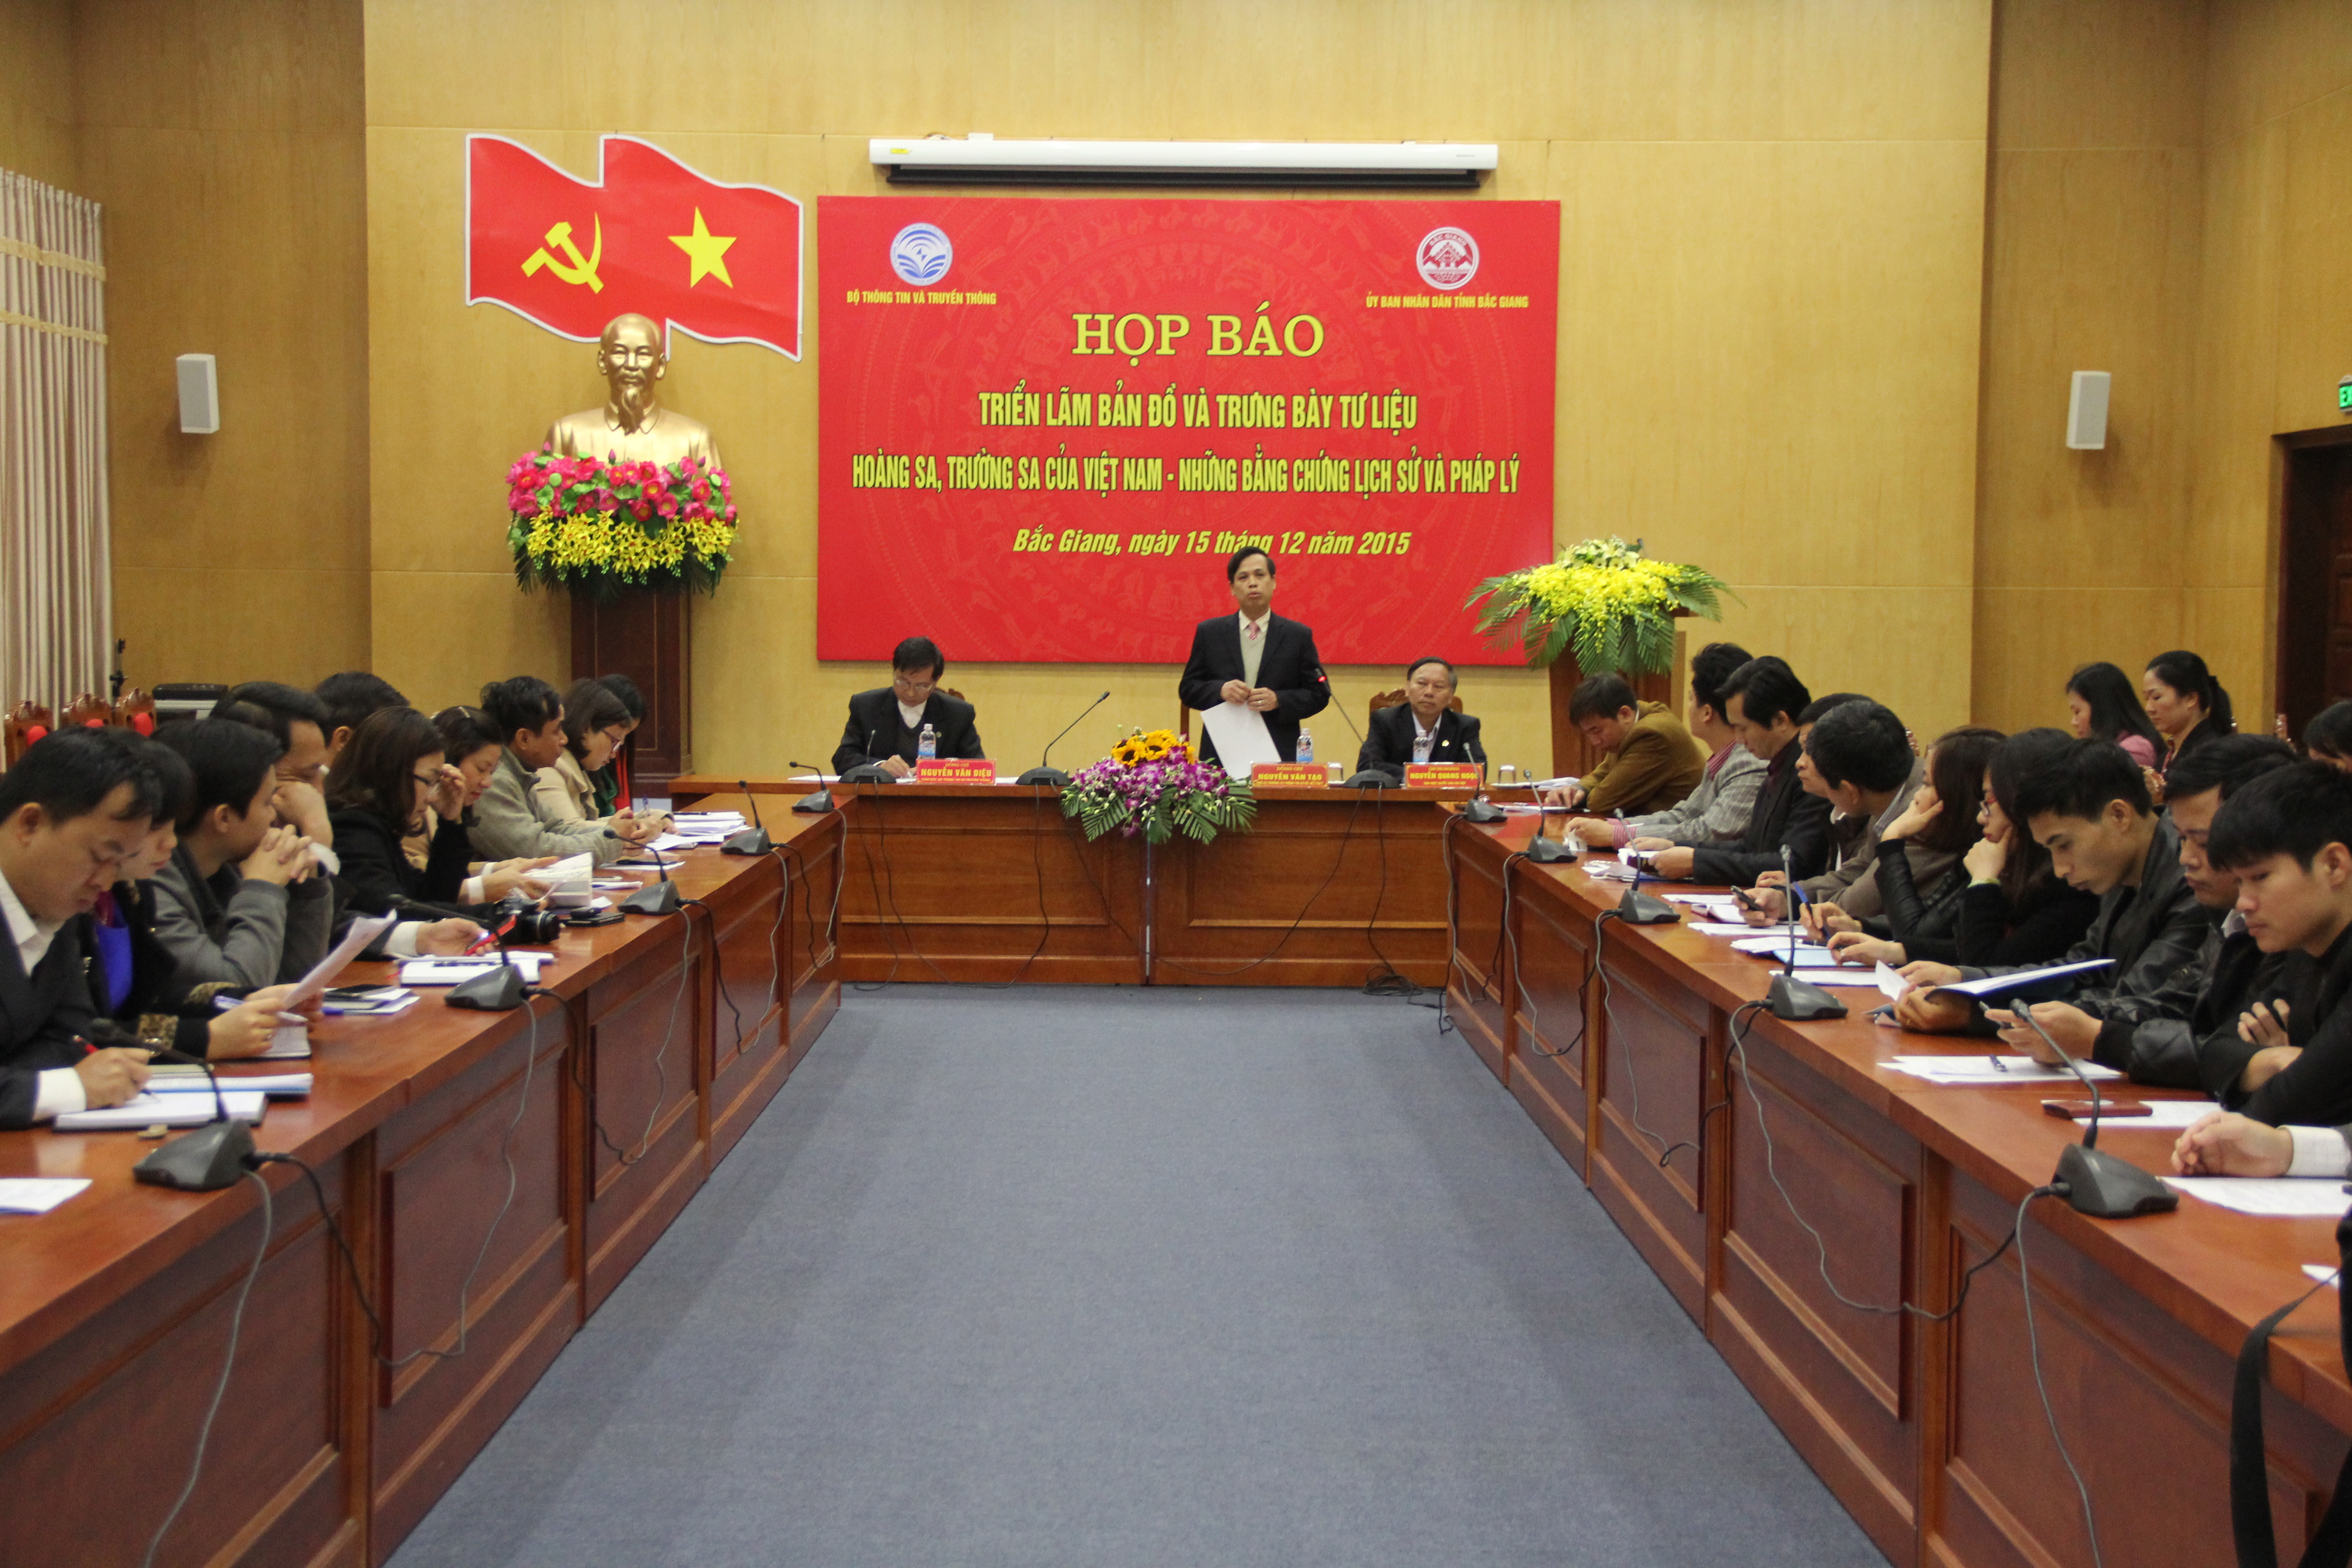 Họp báo Triển lãm "Hoàng Sa, Trường Sa của Việt Nam - Những bằng chứng lịch sử và pháp lý "